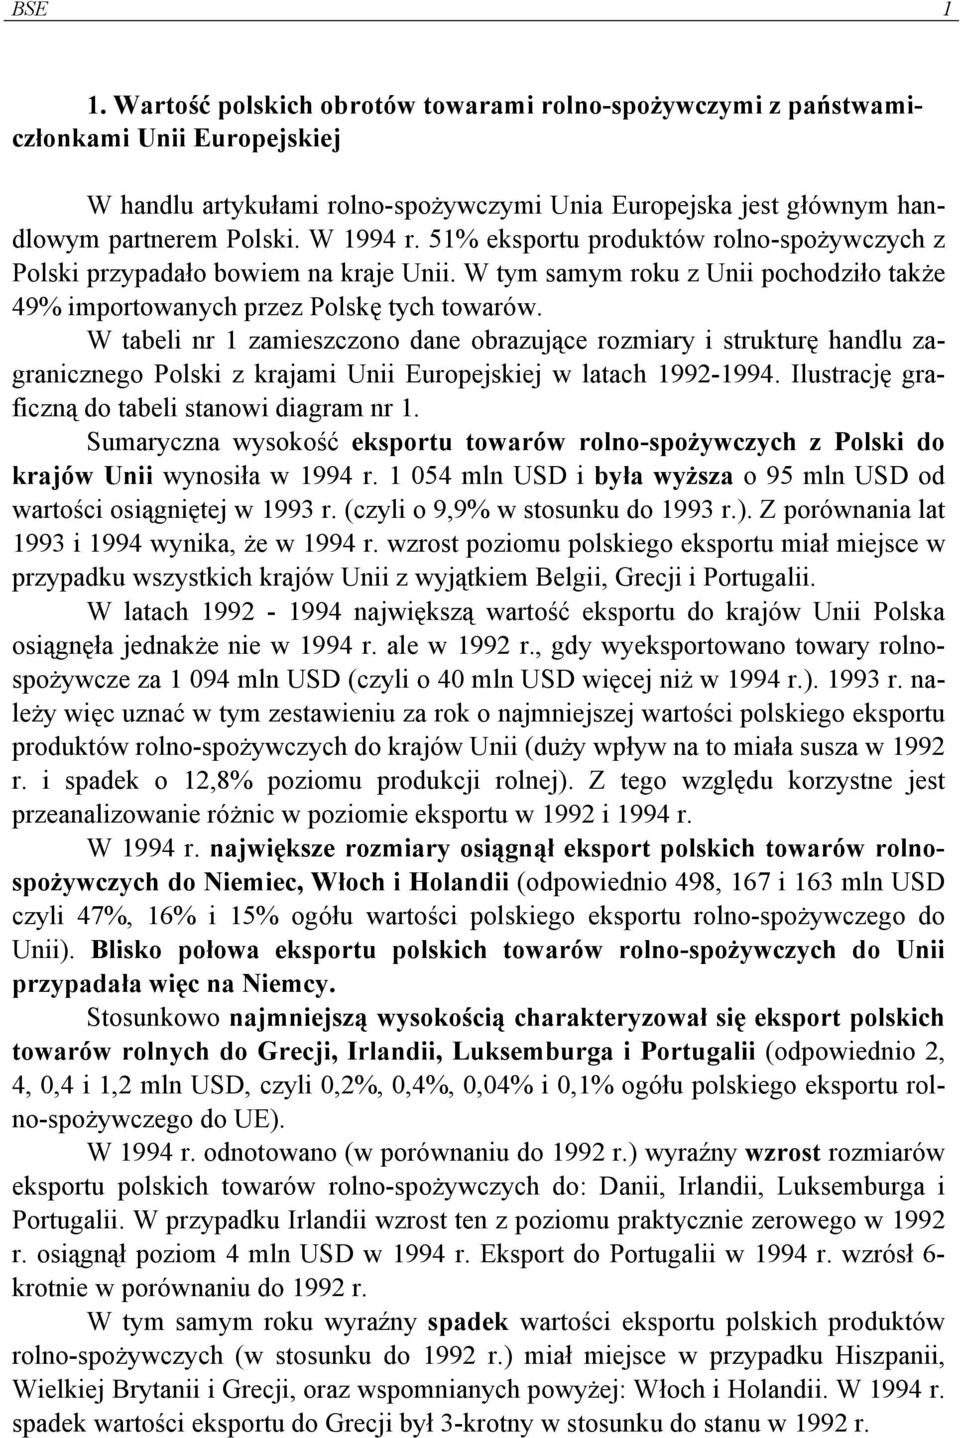 W tabeli nr 1 zamieszczono dane obrazujące rozmiary i strukturę handlu zagranicznego Polski z krajami Unii Europejskiej w latach 1992-1994. Ilustrację graficzną do tabeli stanowi diagram nr 1.